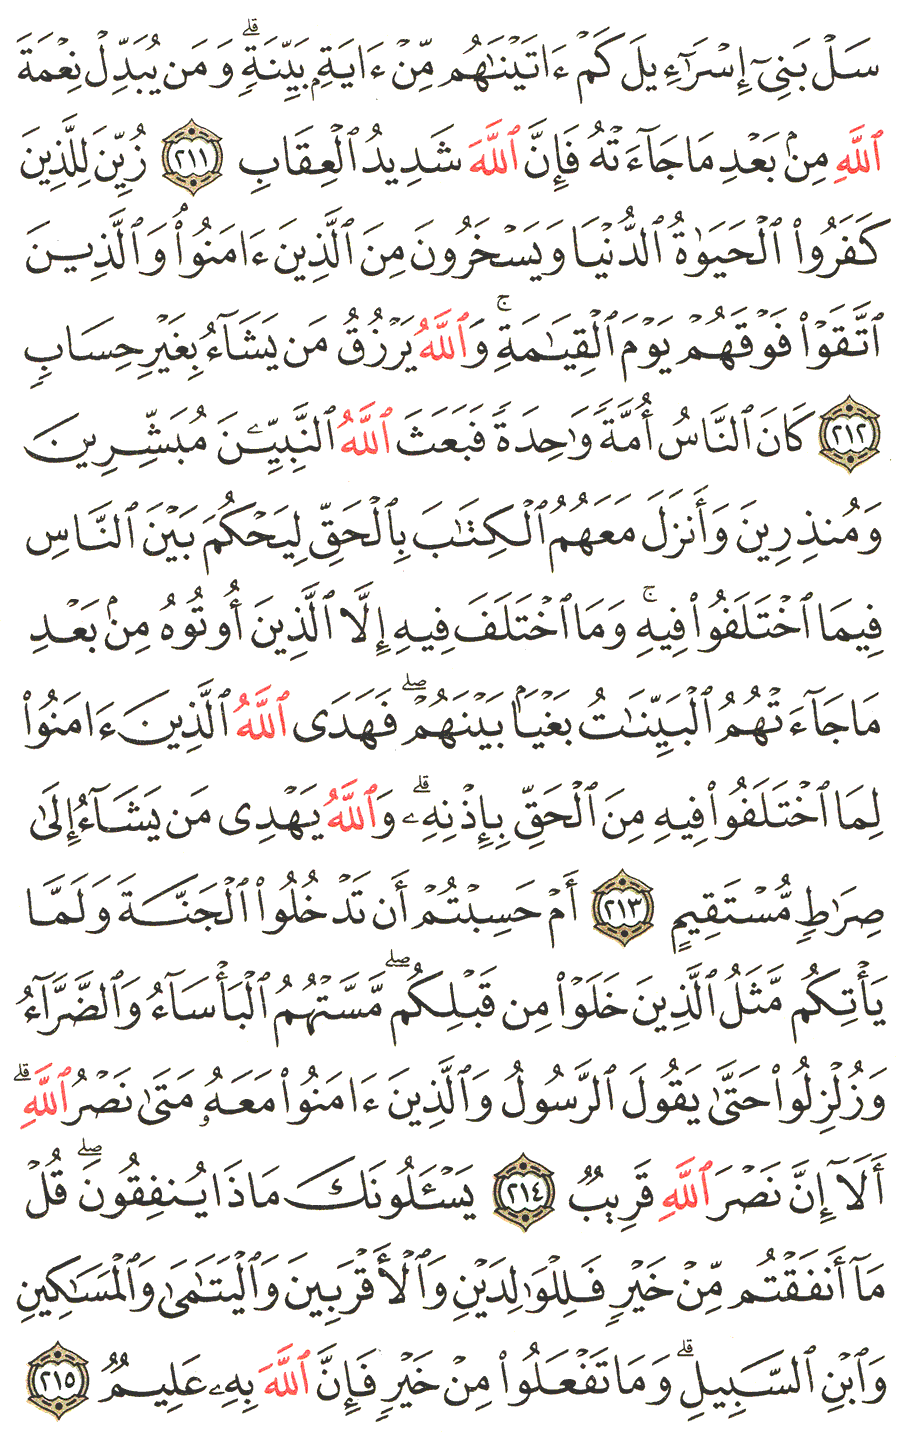 الصفحة رقم  33 من القرآن الكريم مكتوبة من المصحف